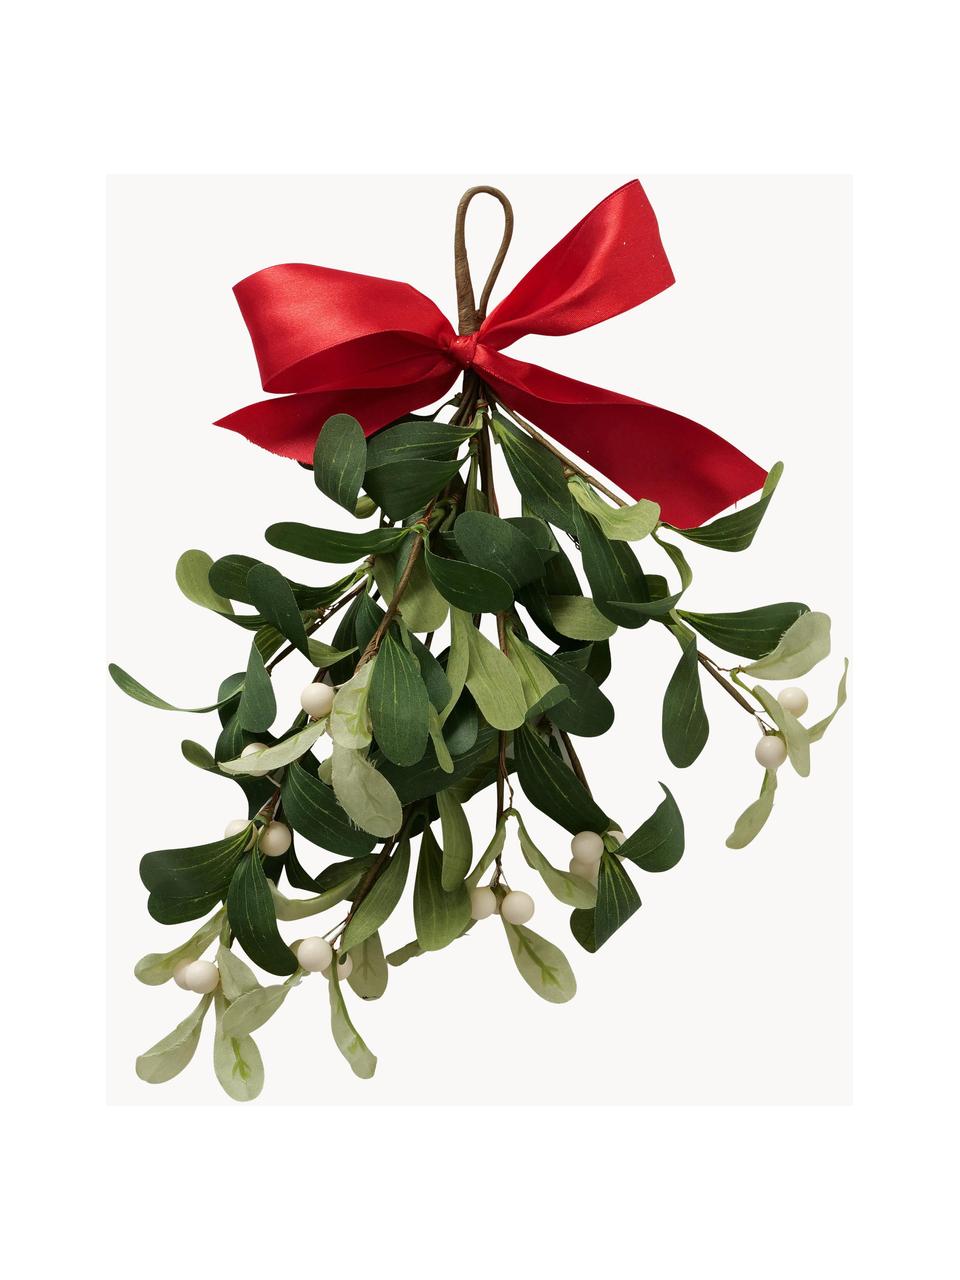 Dekoracja Mistletoe, Polietylen, Zielony, czerwony, biały, S 22 x W 28 cm